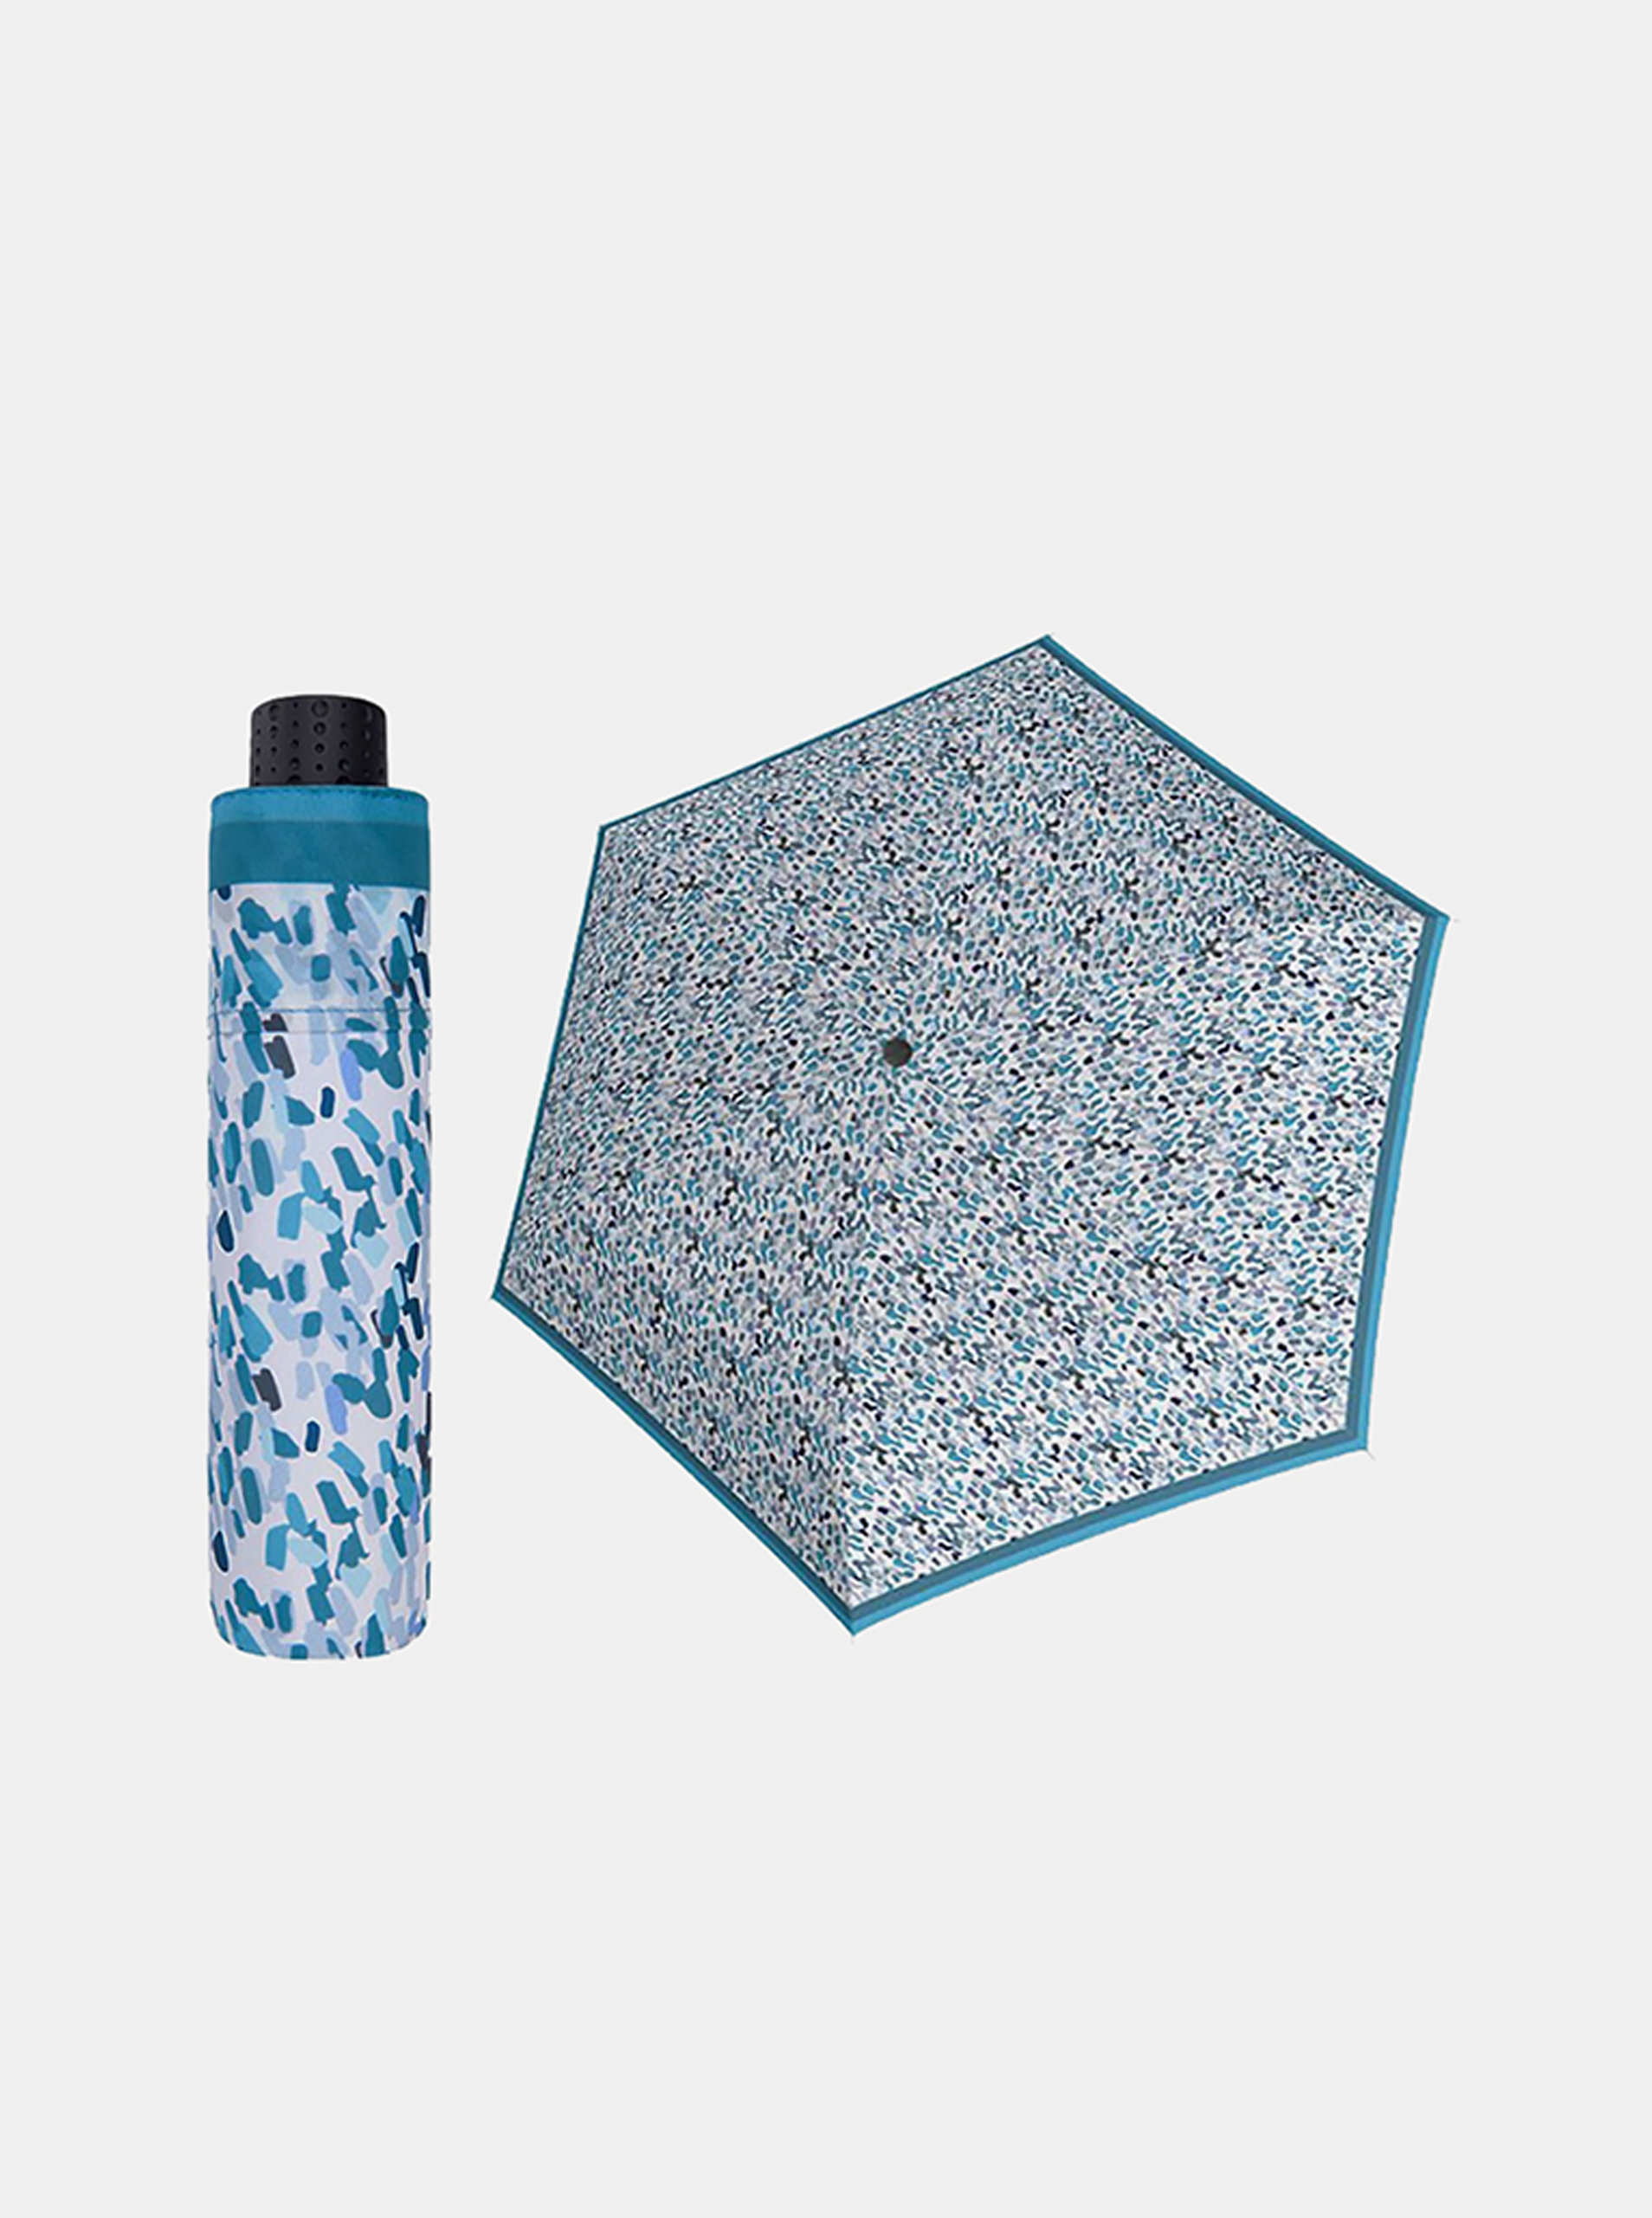 Fotografie Doppler Havanna Sprinkle modrý ultralehký skládací deštník s UV ochranou - Modrá